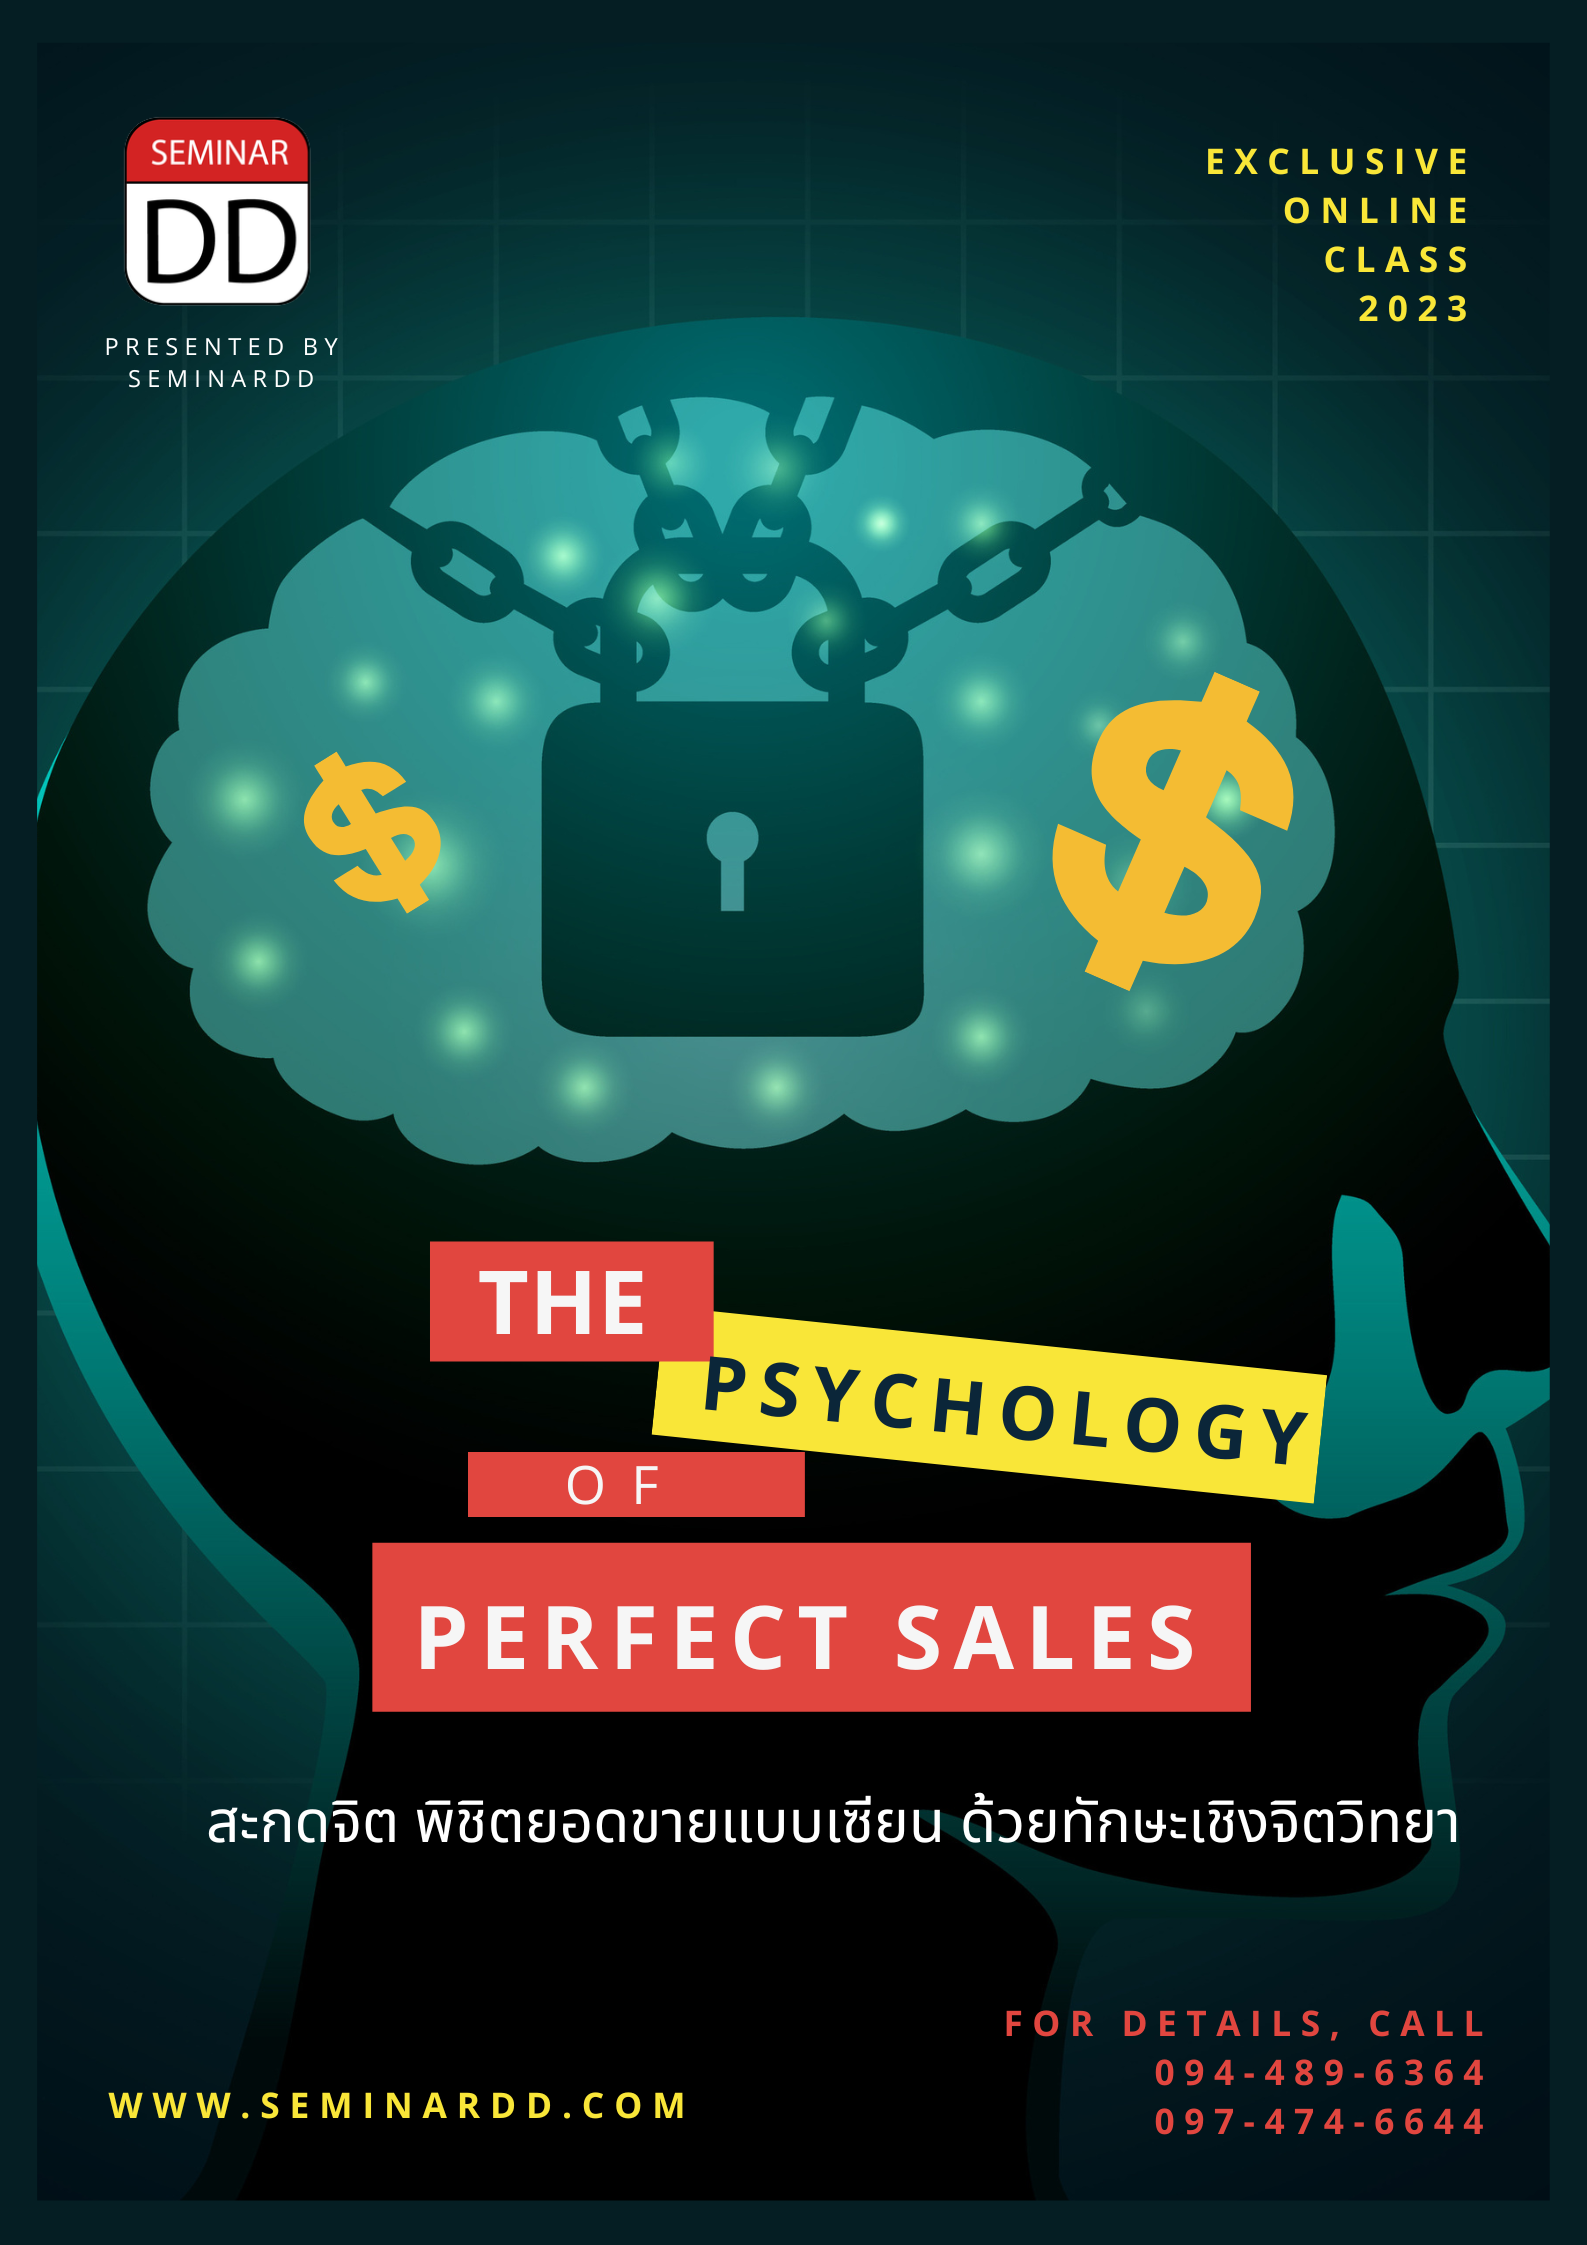 หลักสูตรอบรม อบรมออนไลน์ สะกดจิต พิชิตยอดขายแบบเซียน ด้วยทักษะเชิงจิตวิทยา ( The Psychology of Perfect Sales ) - หลักสูตร เต็มวัน